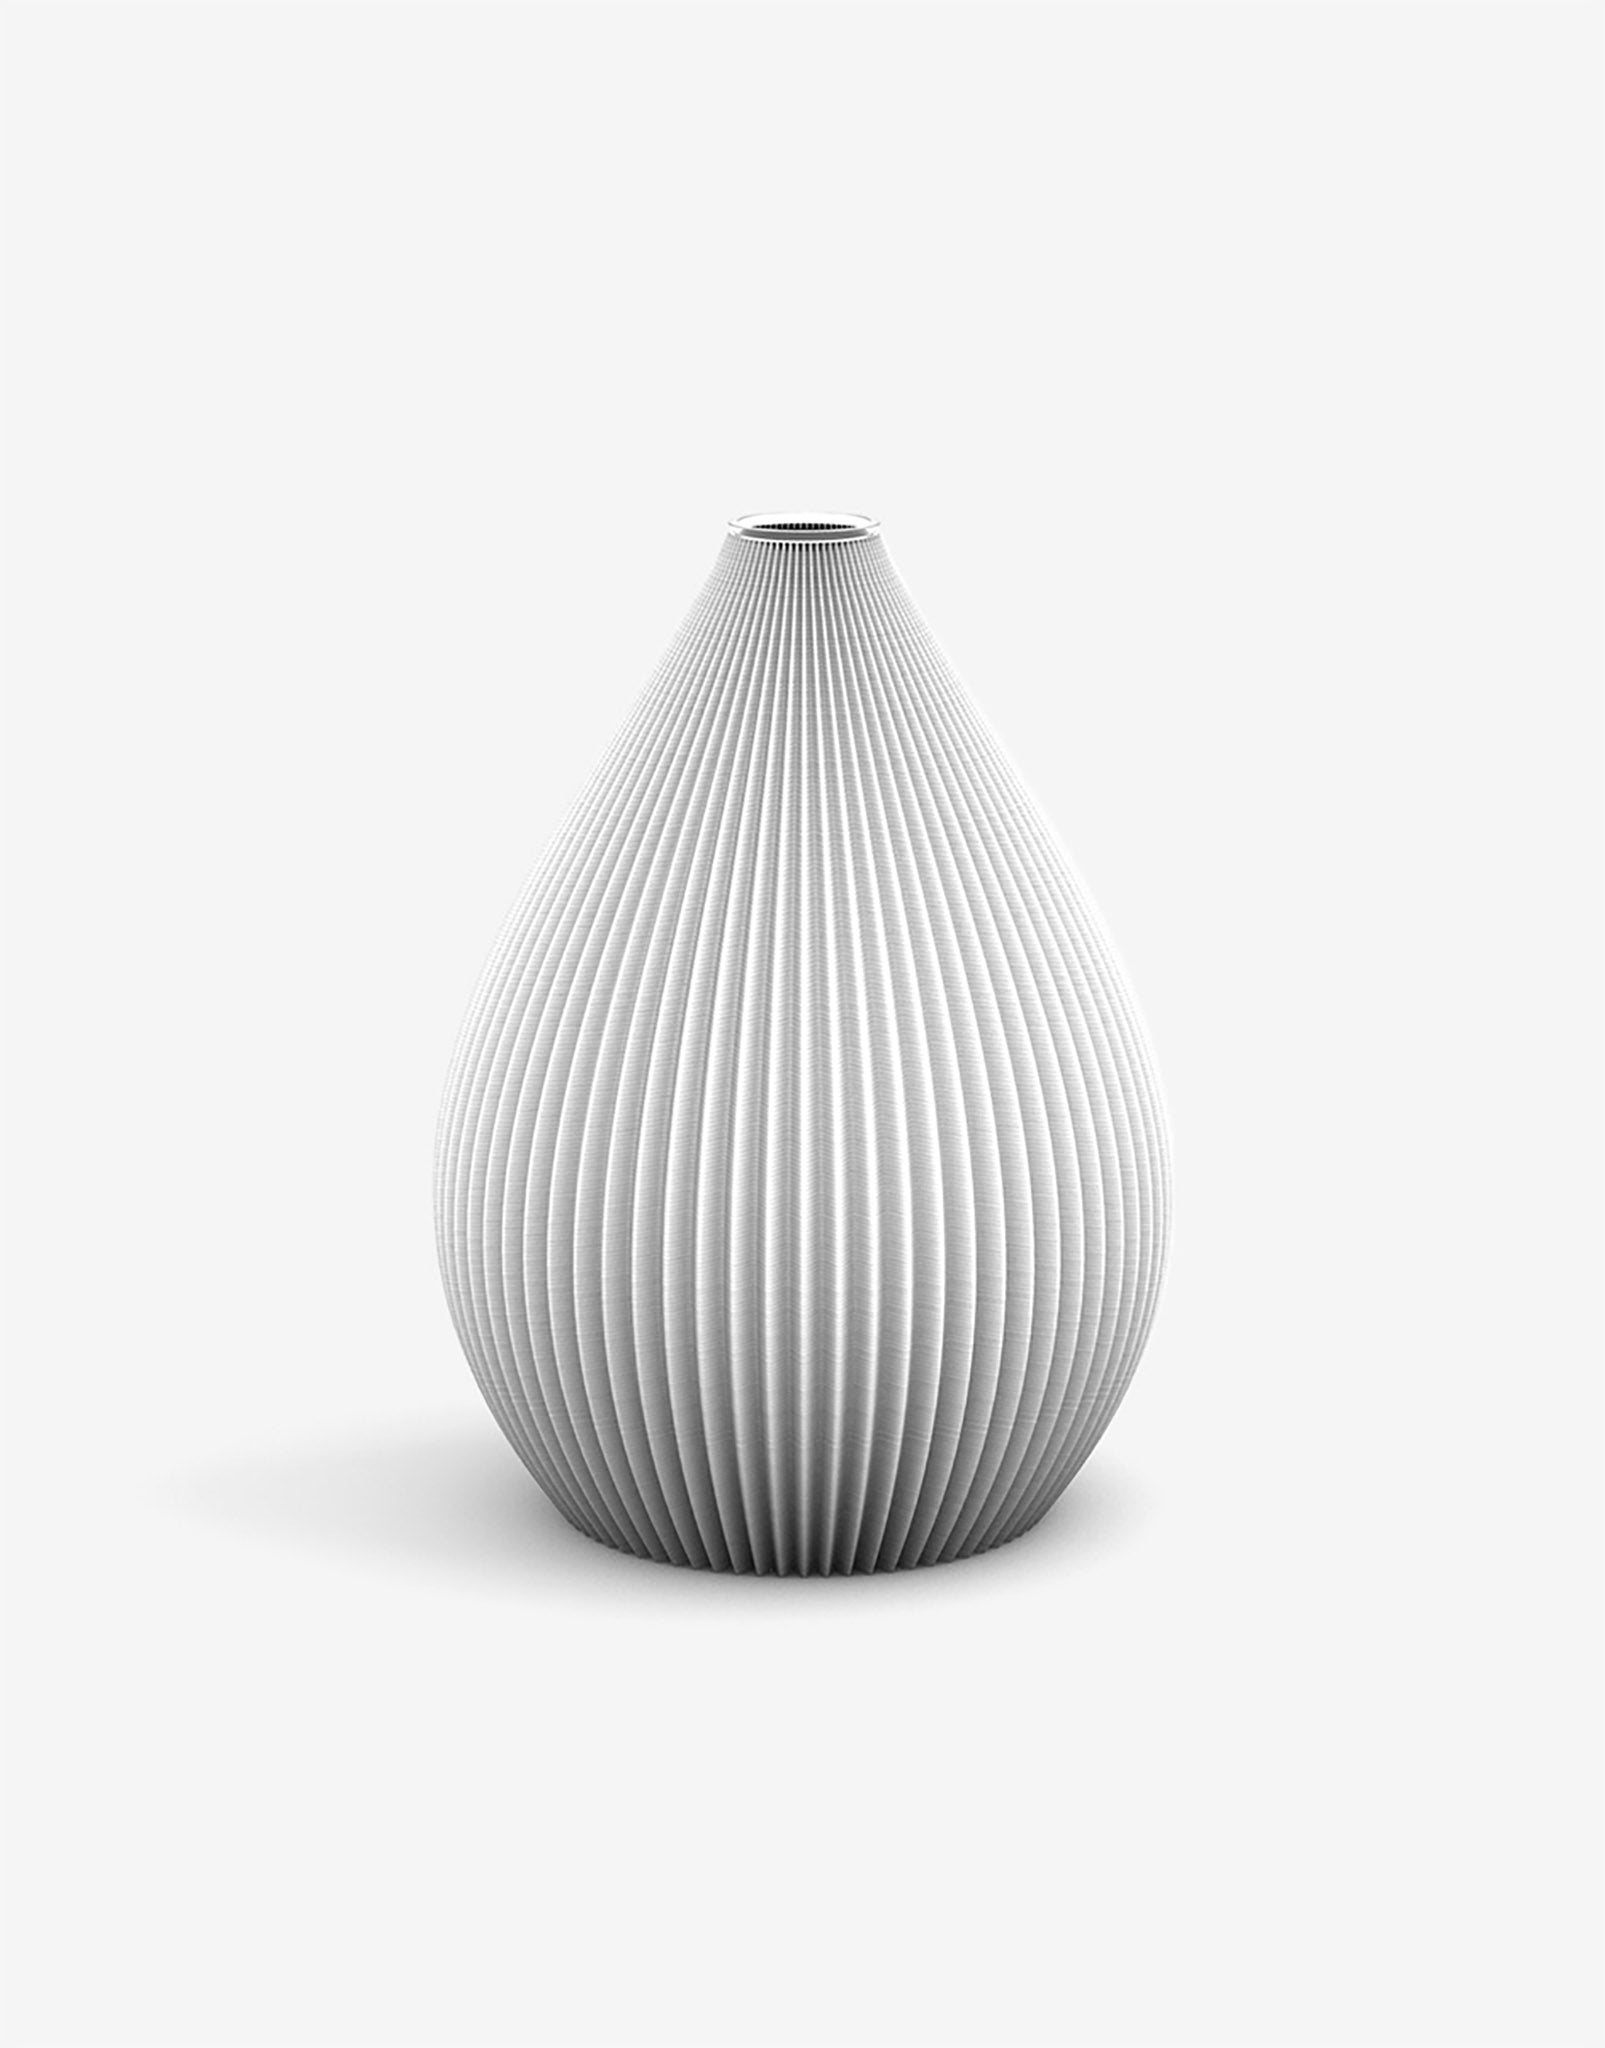 Ovale 3D Druck Kunststoff Vase Balloon von Recozy mit Glaseinsatz, Farbe: Arctic White, Größe: S